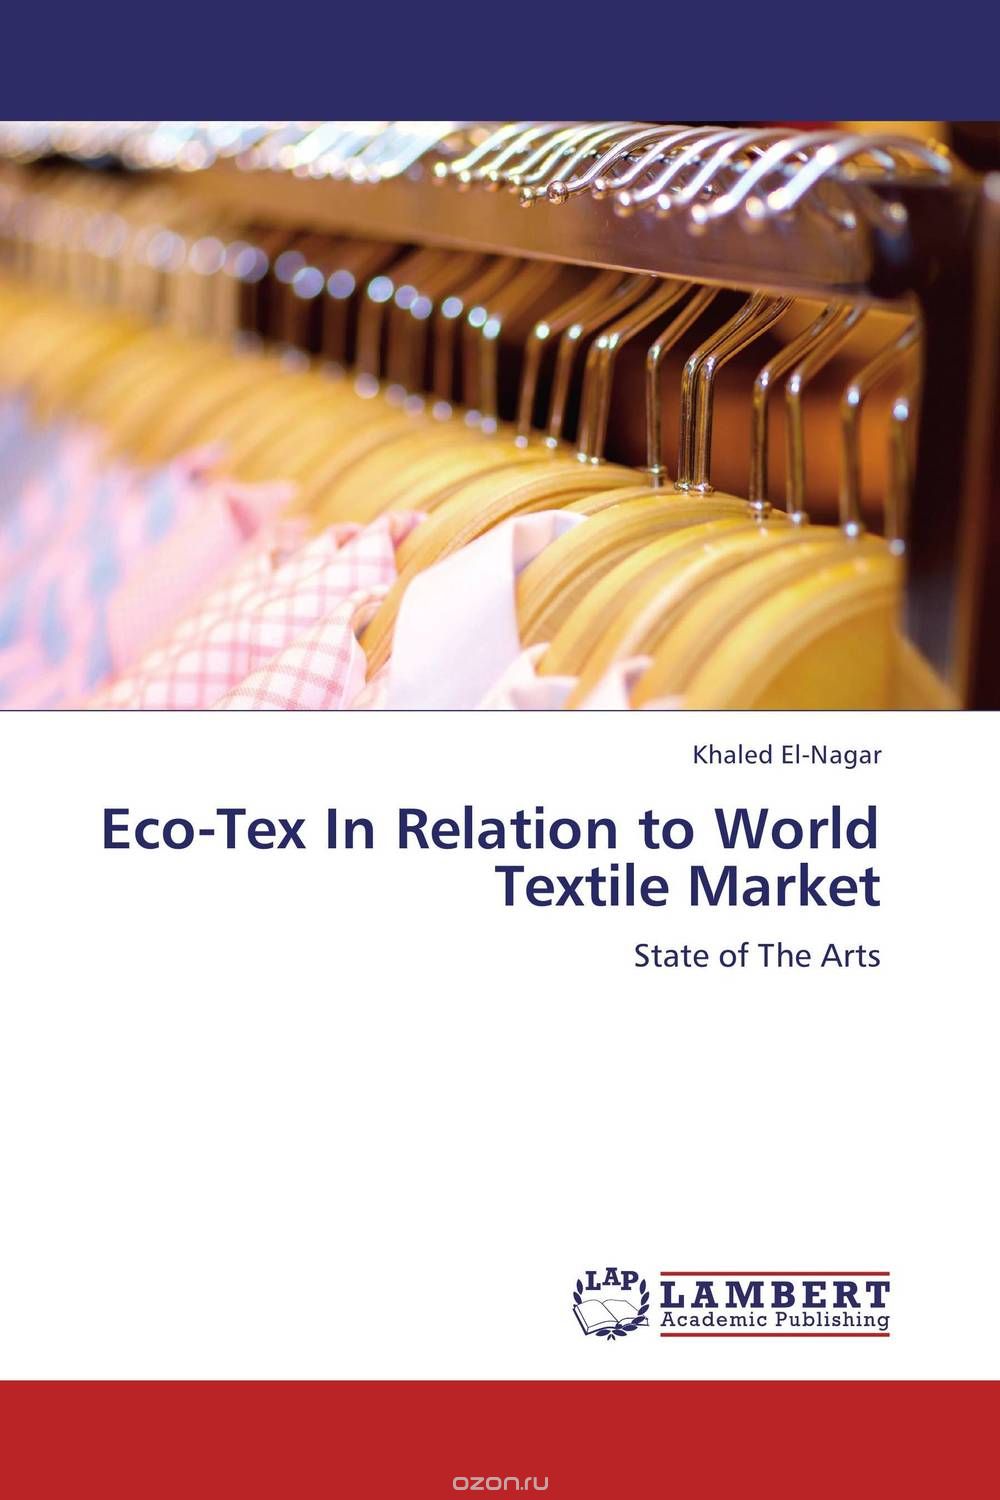 Скачать книгу "Eco-Tex In Relation to World Textile Market"